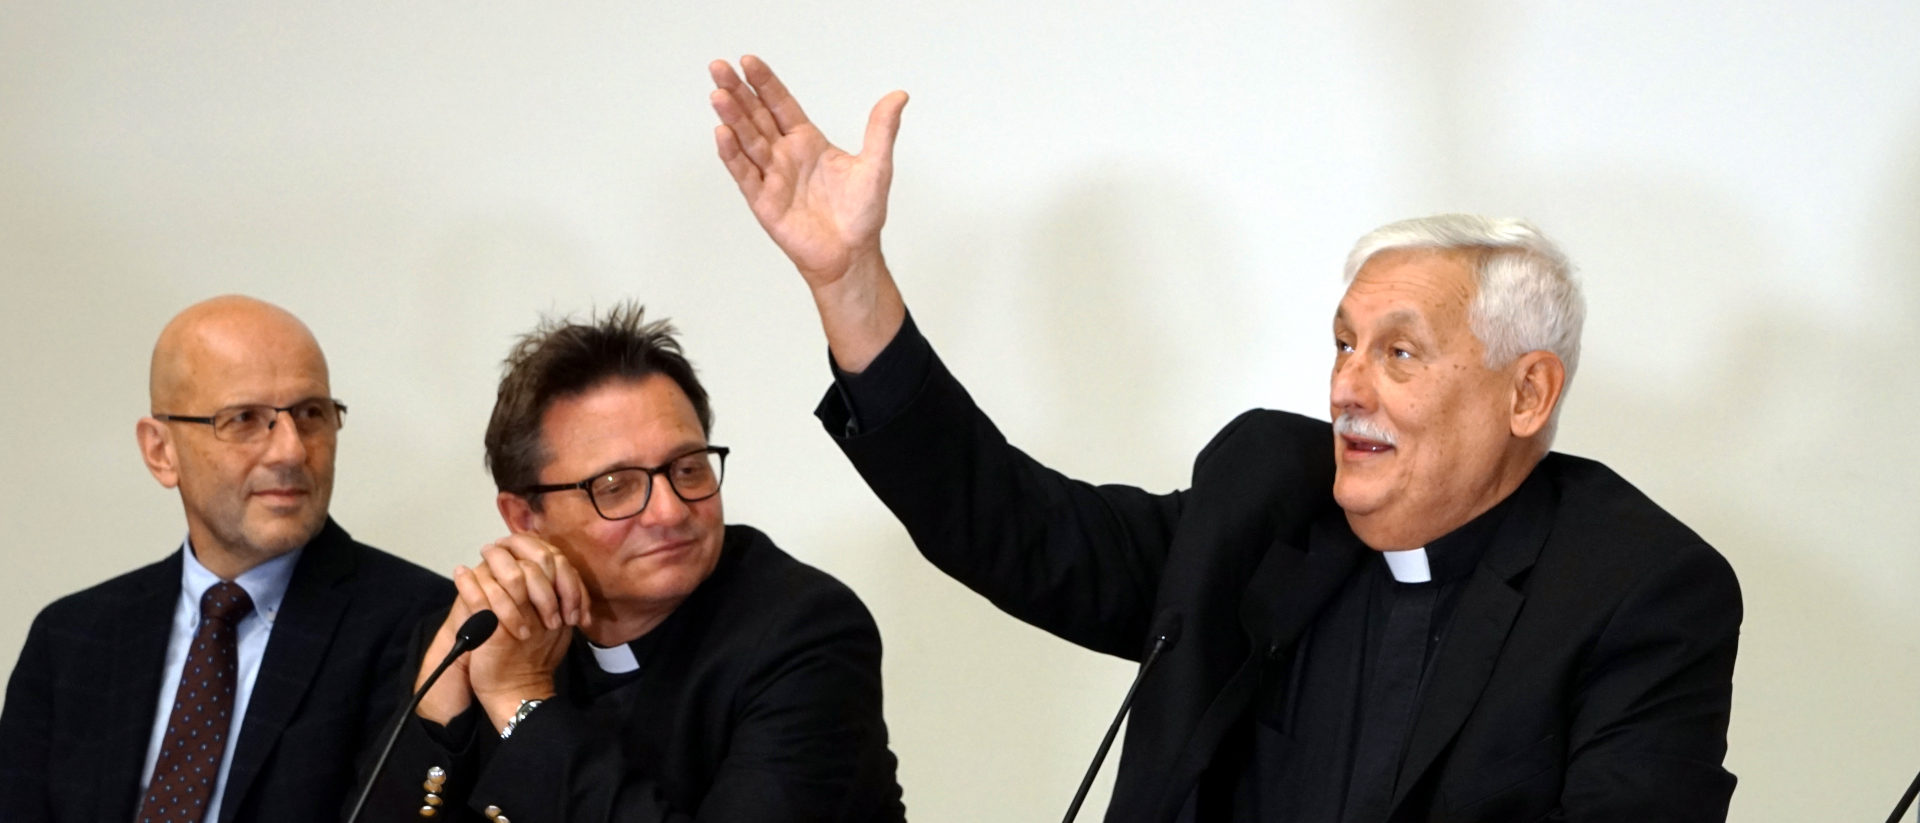 Daniel Kosch, Felix Gmür, Arturo Sosa (v.l.) anlässlich eines Podiums 2019 in der Schweiz